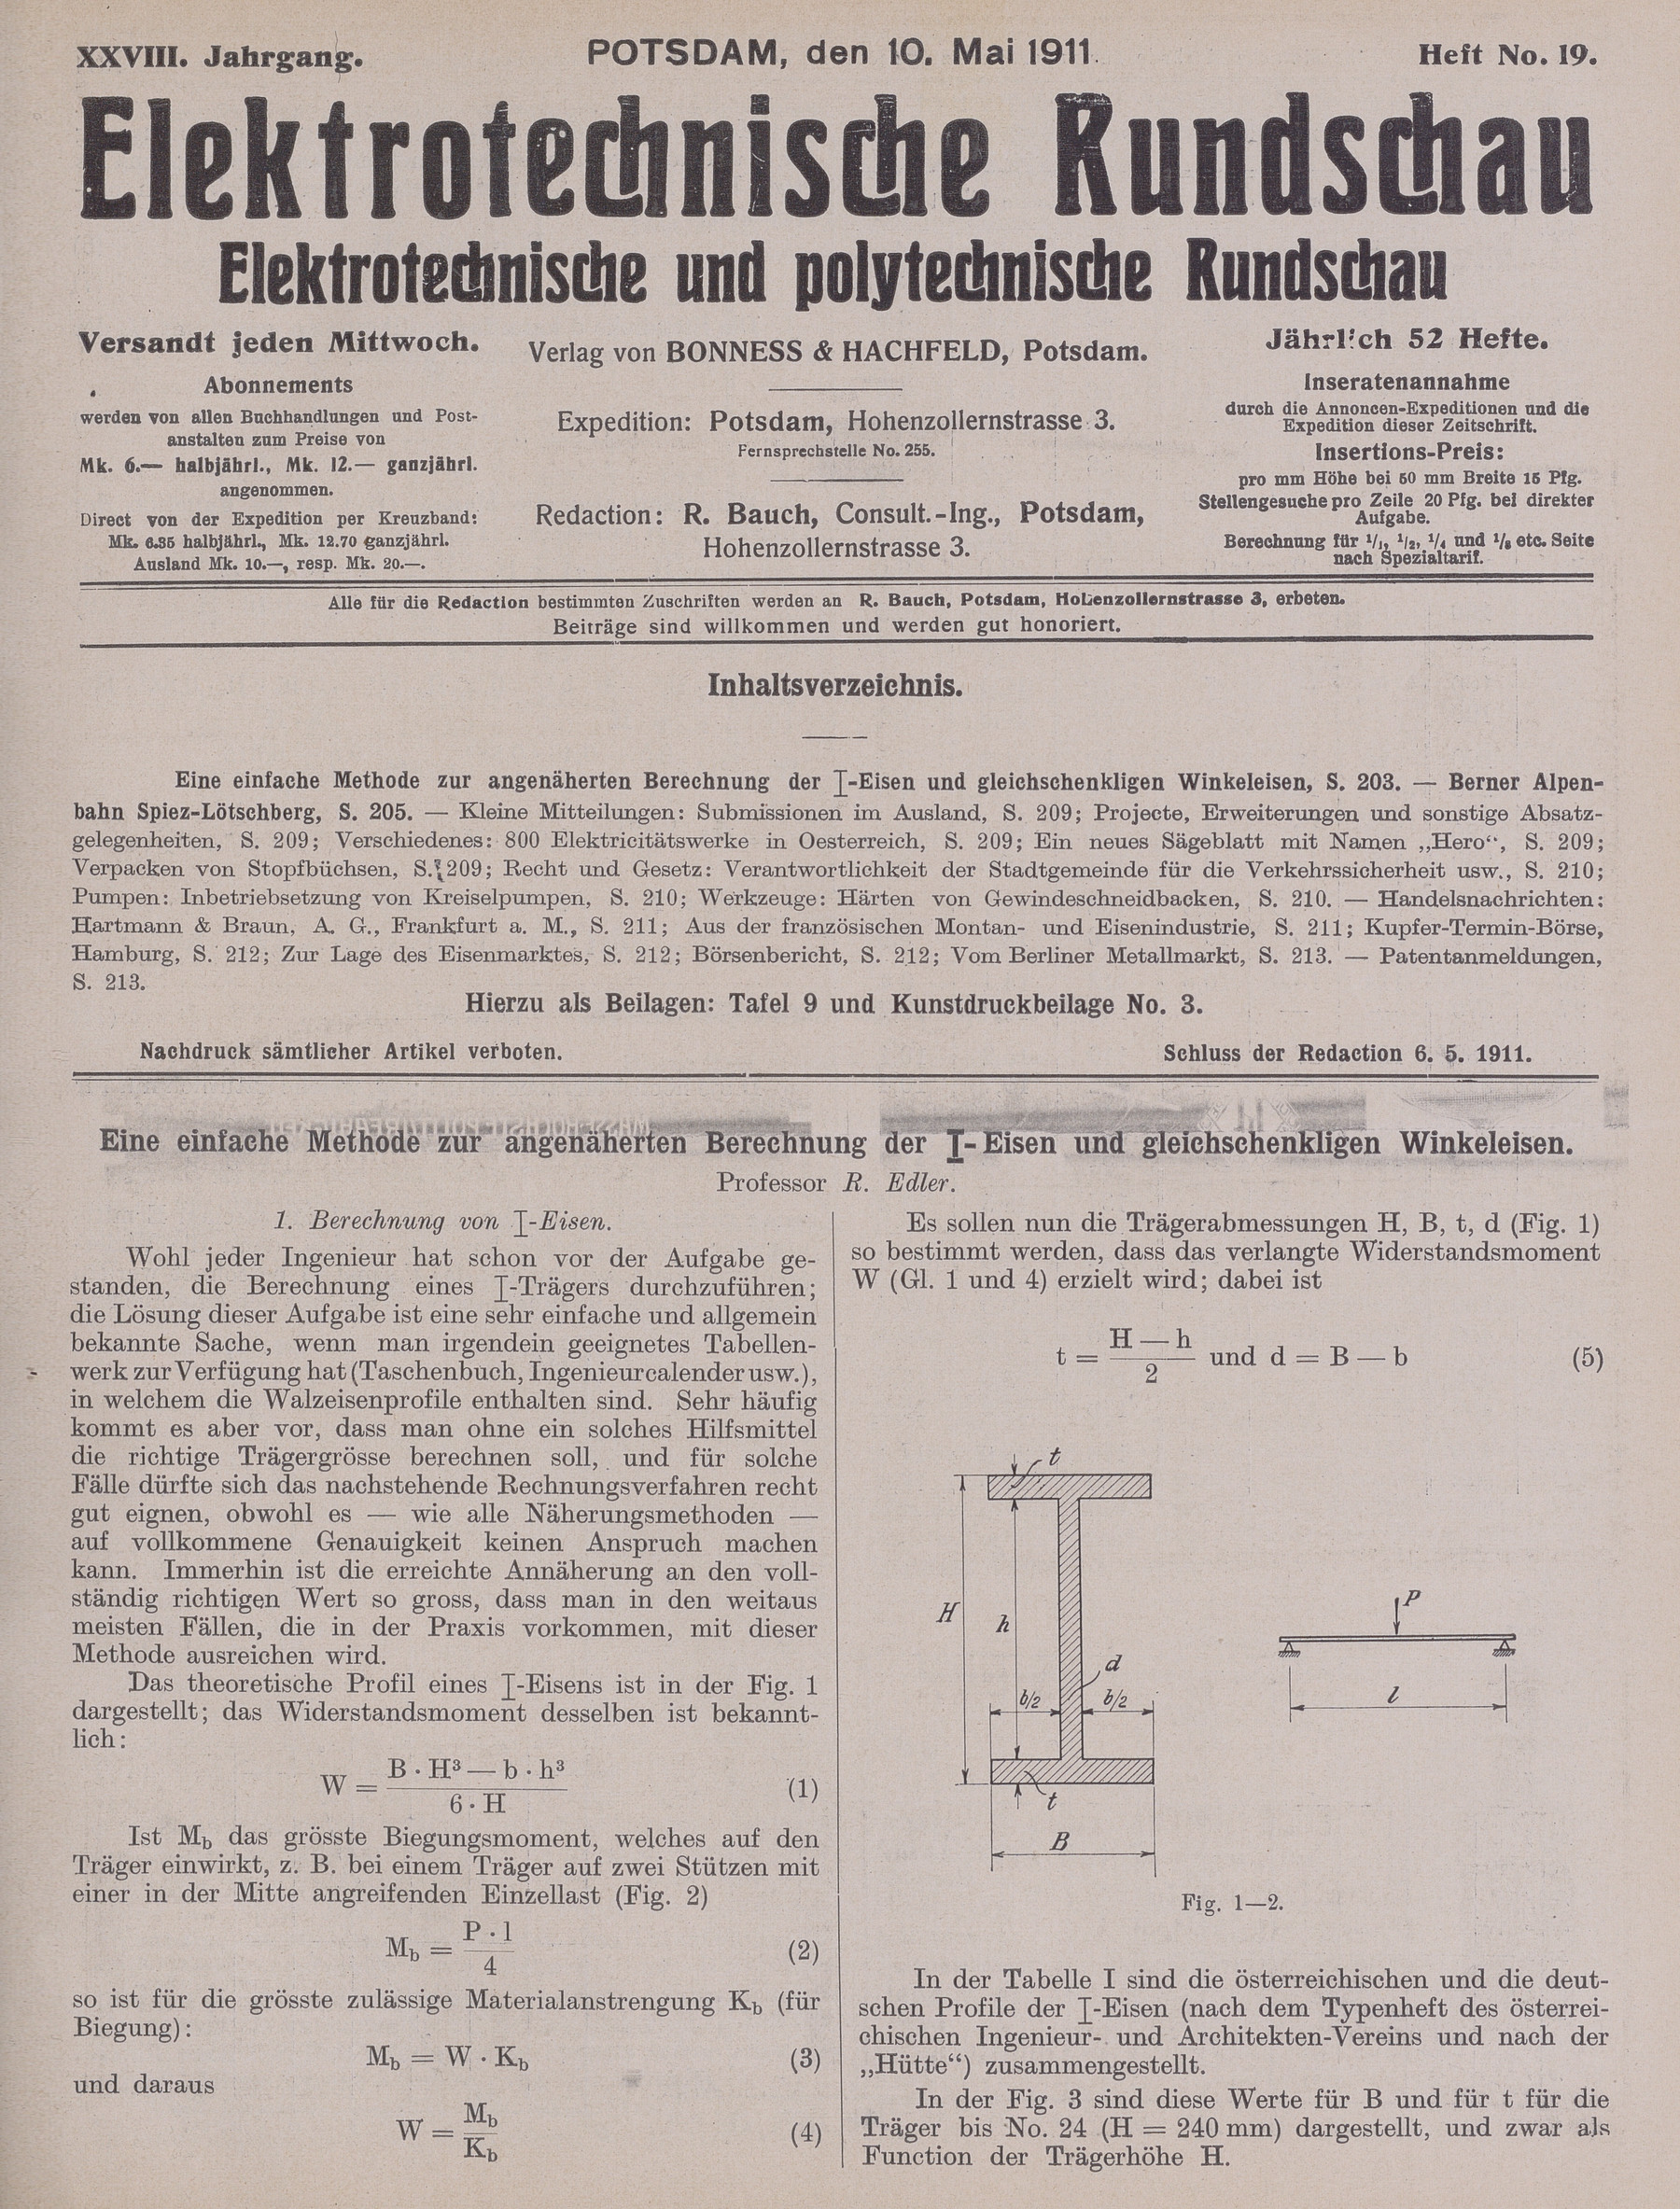 Elektrotechnische Rundschau : Elektrotechnische und polytechnische Rundschau, XXVIII. Jahrgang, Heft No. 19